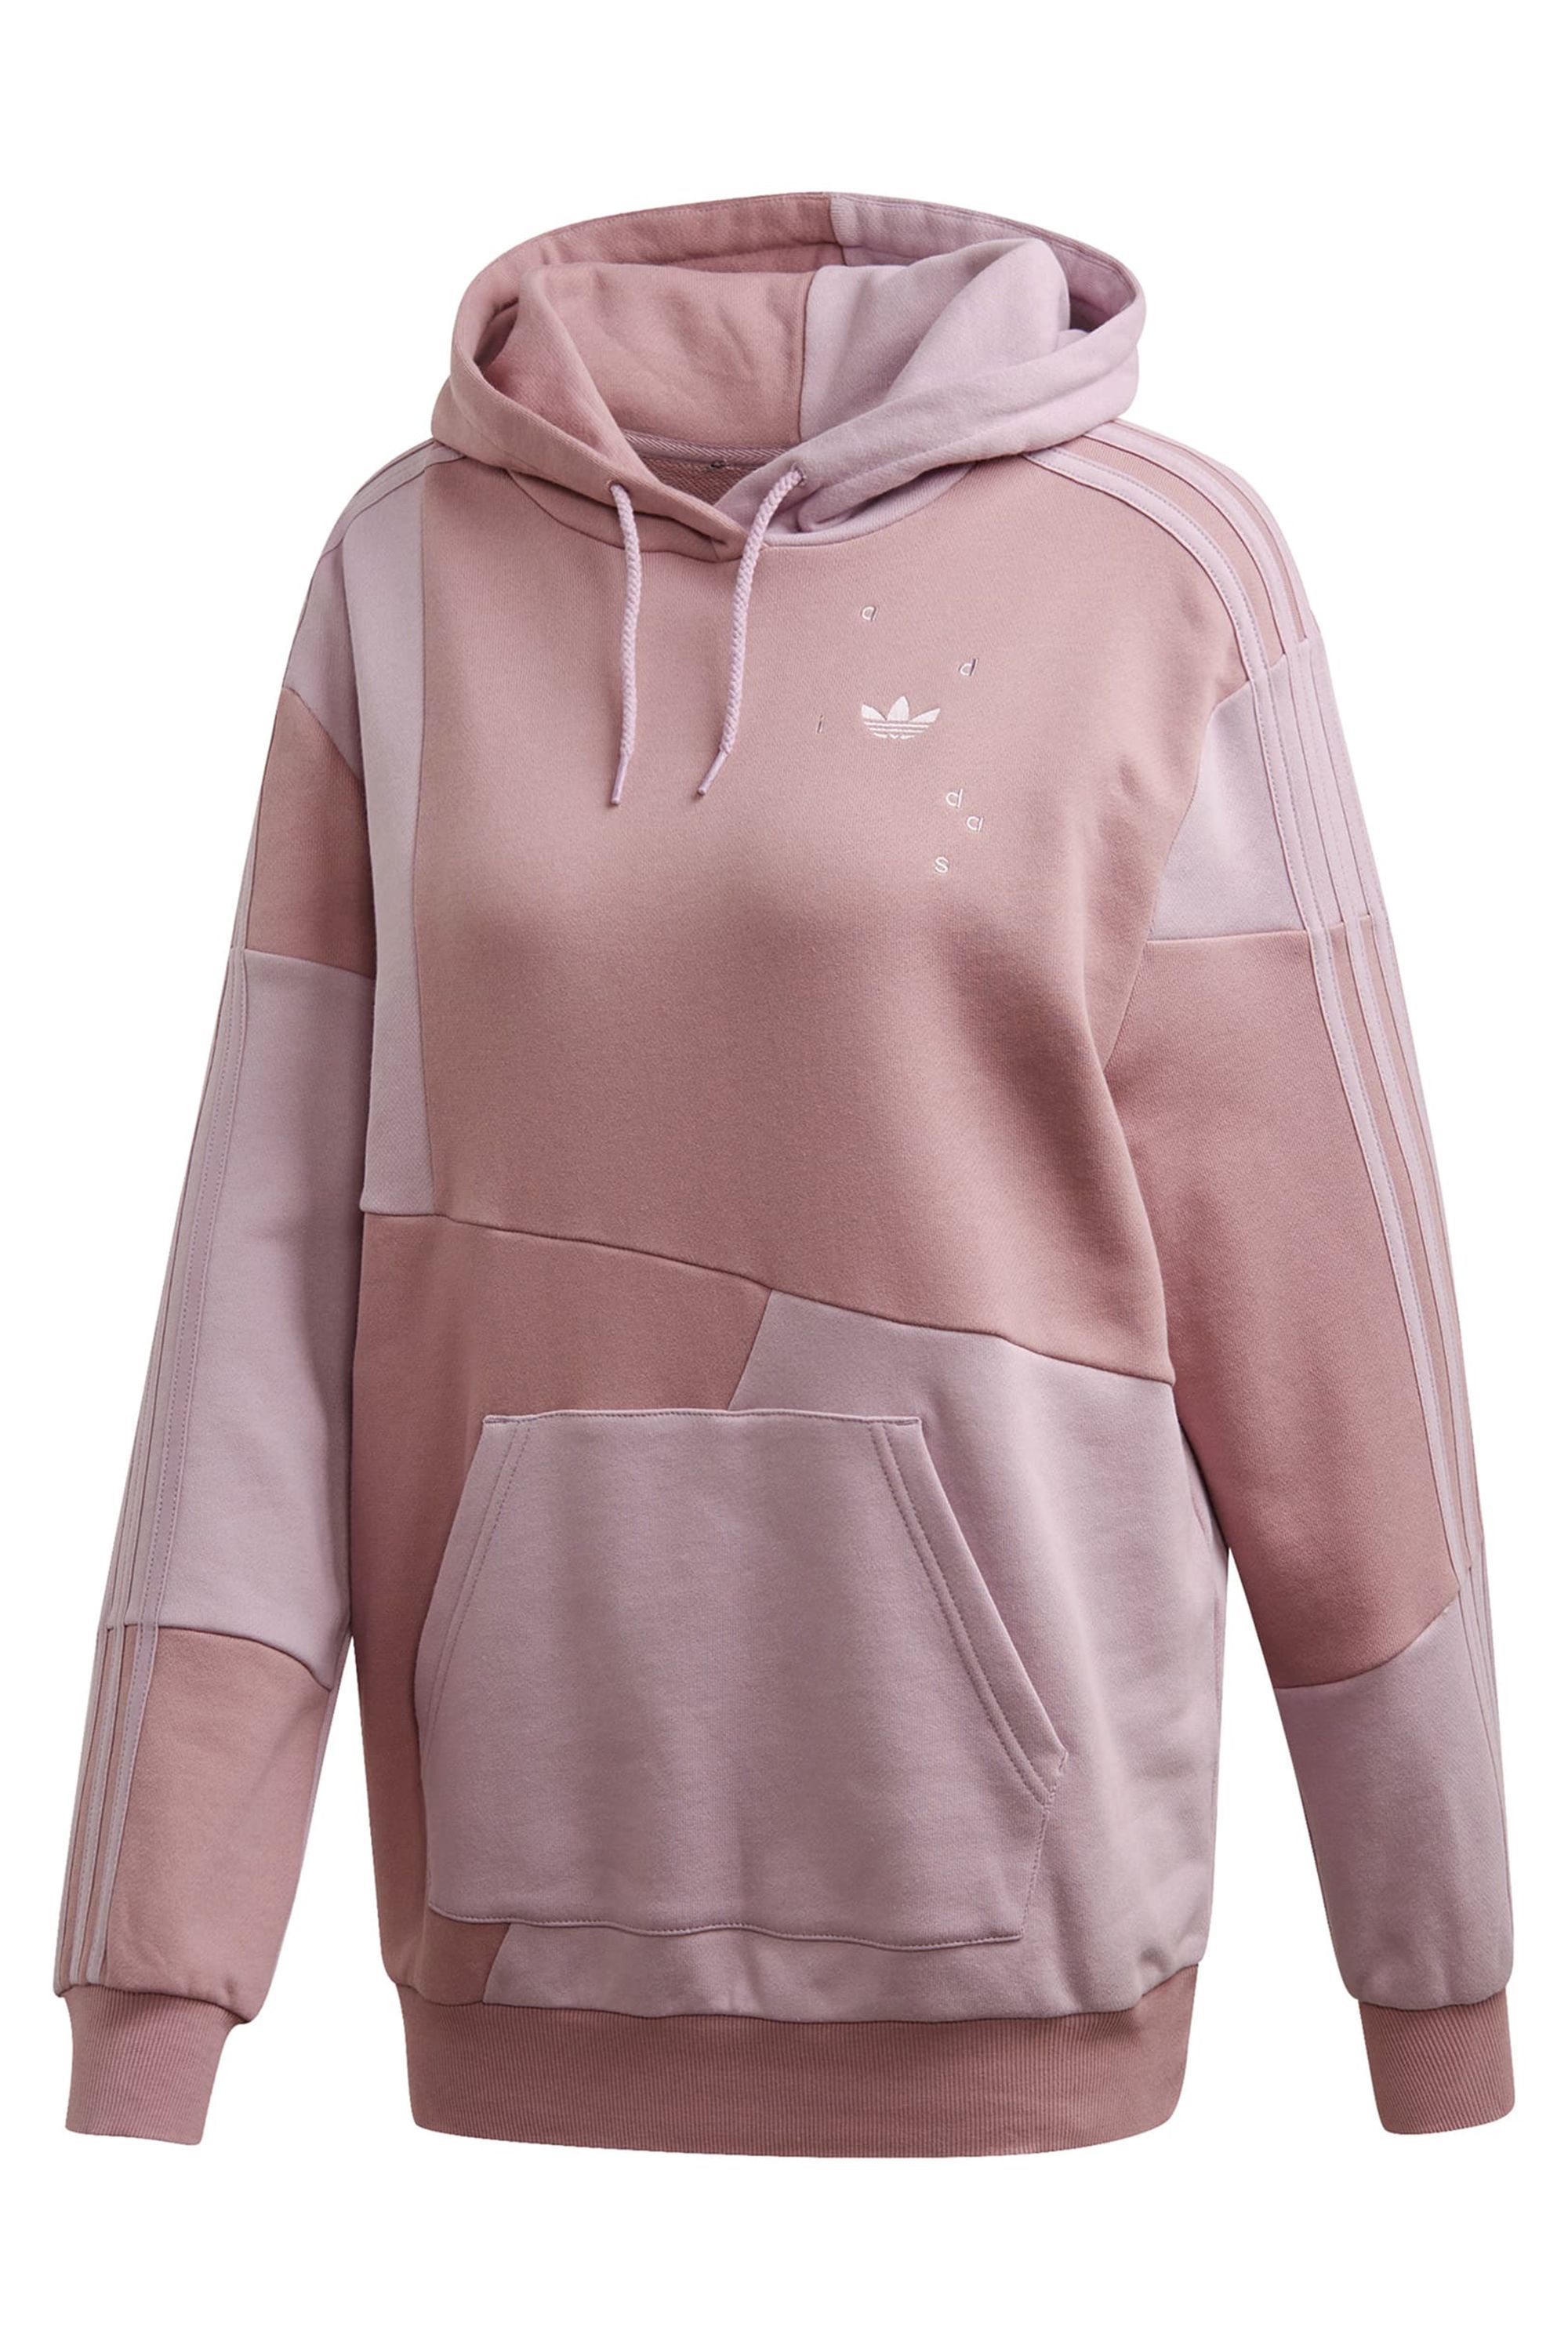 trendy hoodie brands